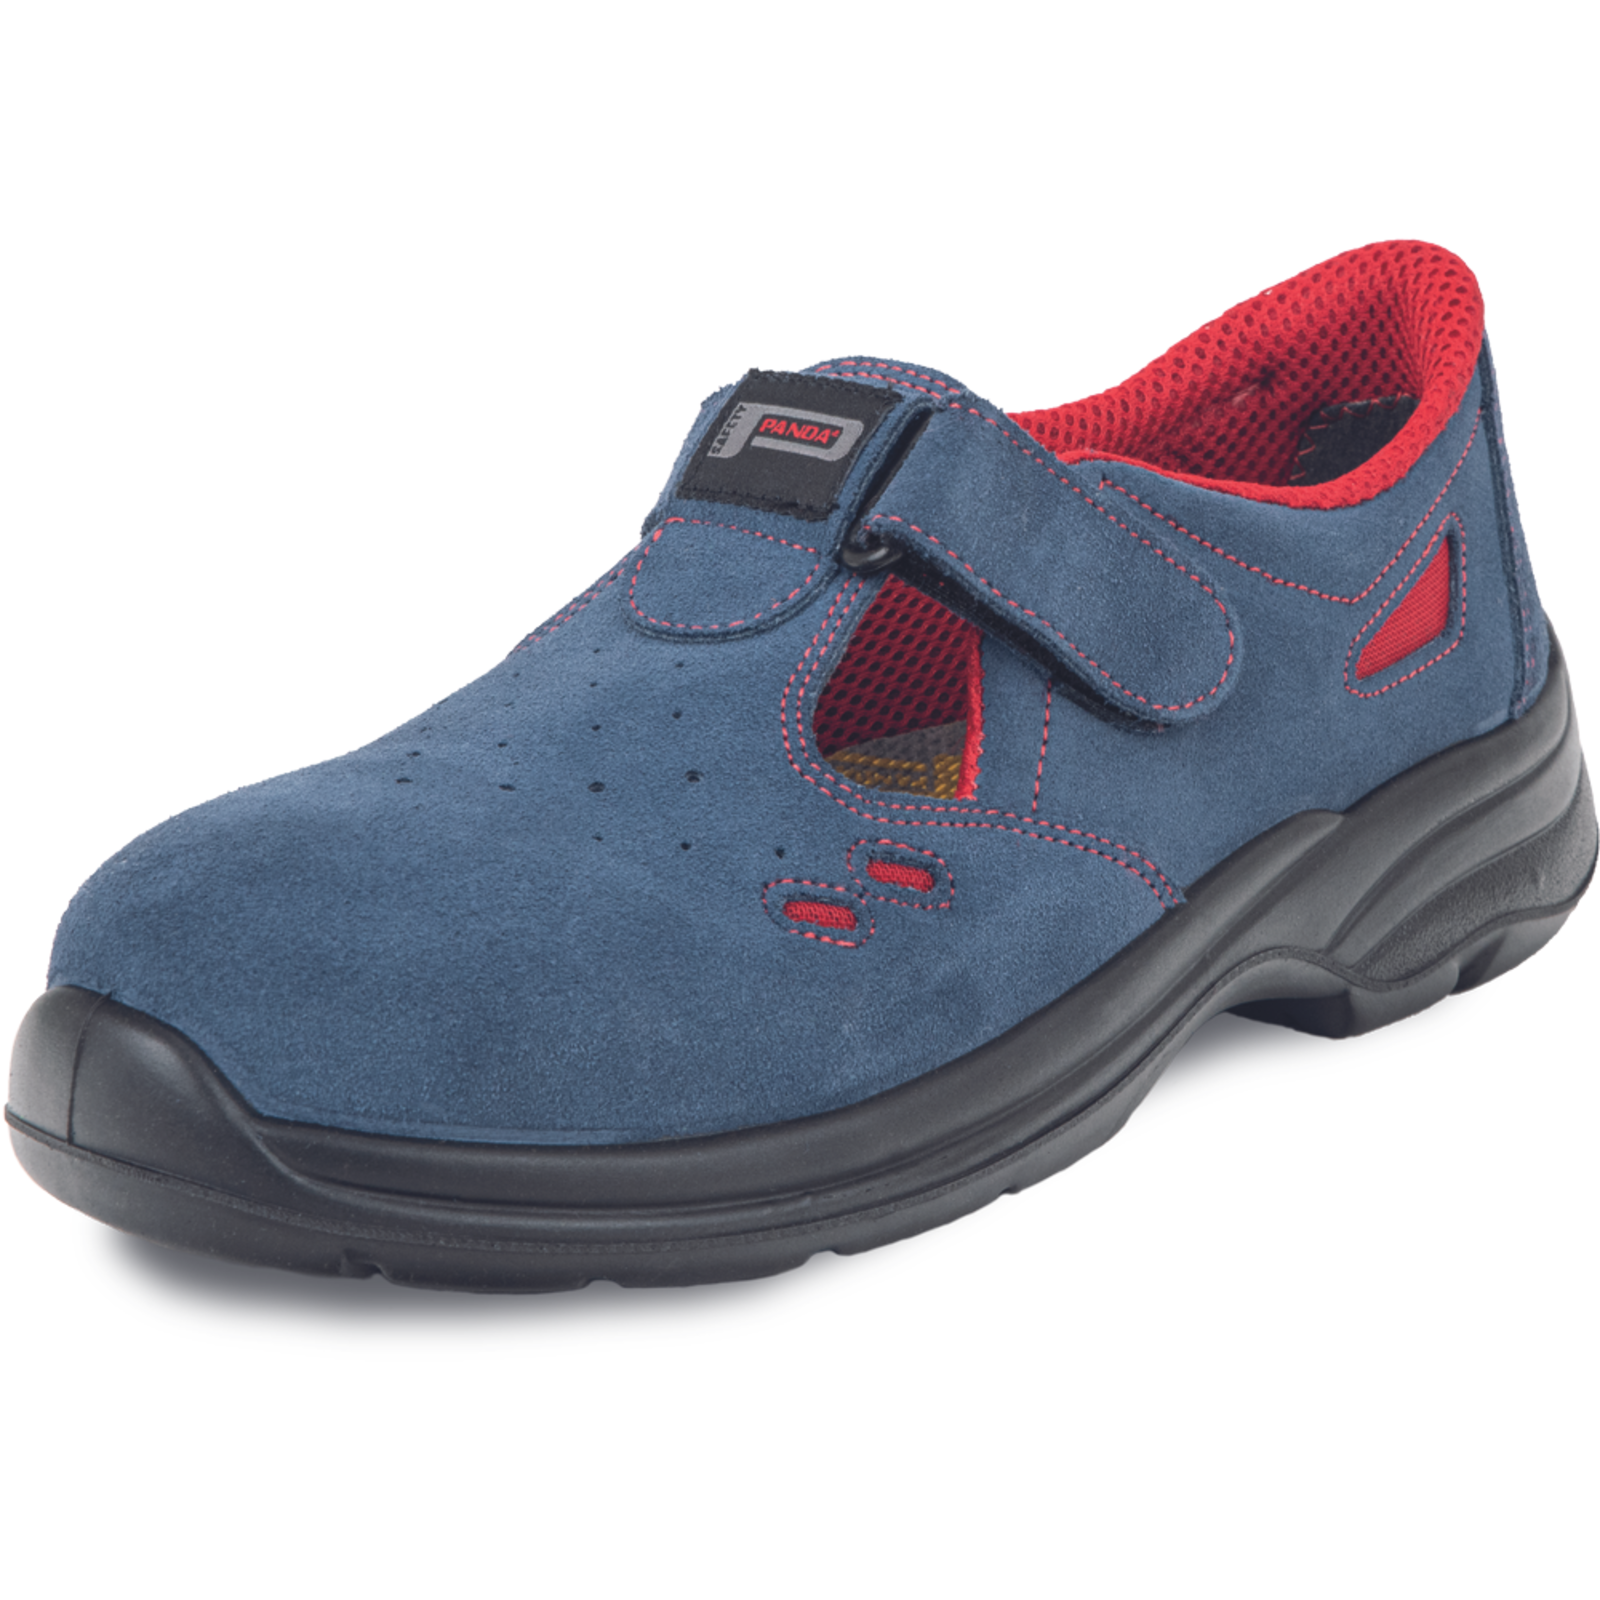 Pracovné bezpečnostné sandále Panda Ringo MF S1 SRC - veľkosť: 48, farba: modrá/červená